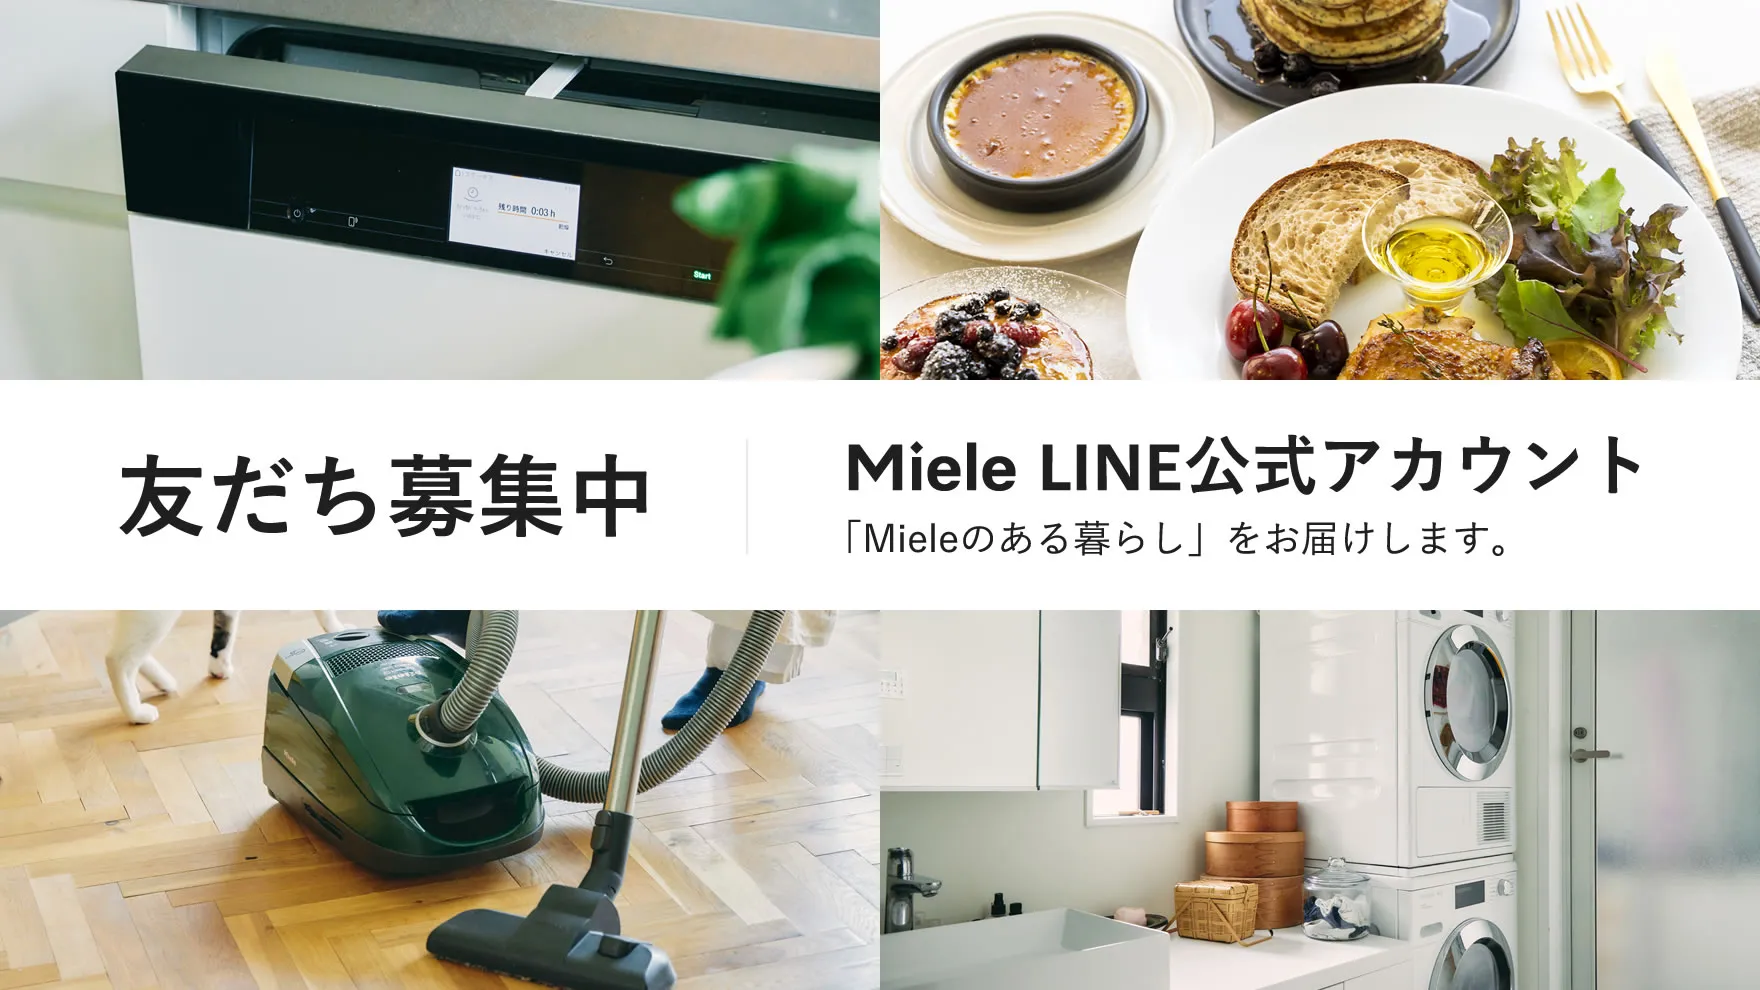 友だち募集中 Miele LINE 公式アカウント 「Mieleのある暮らし」をお届けします。